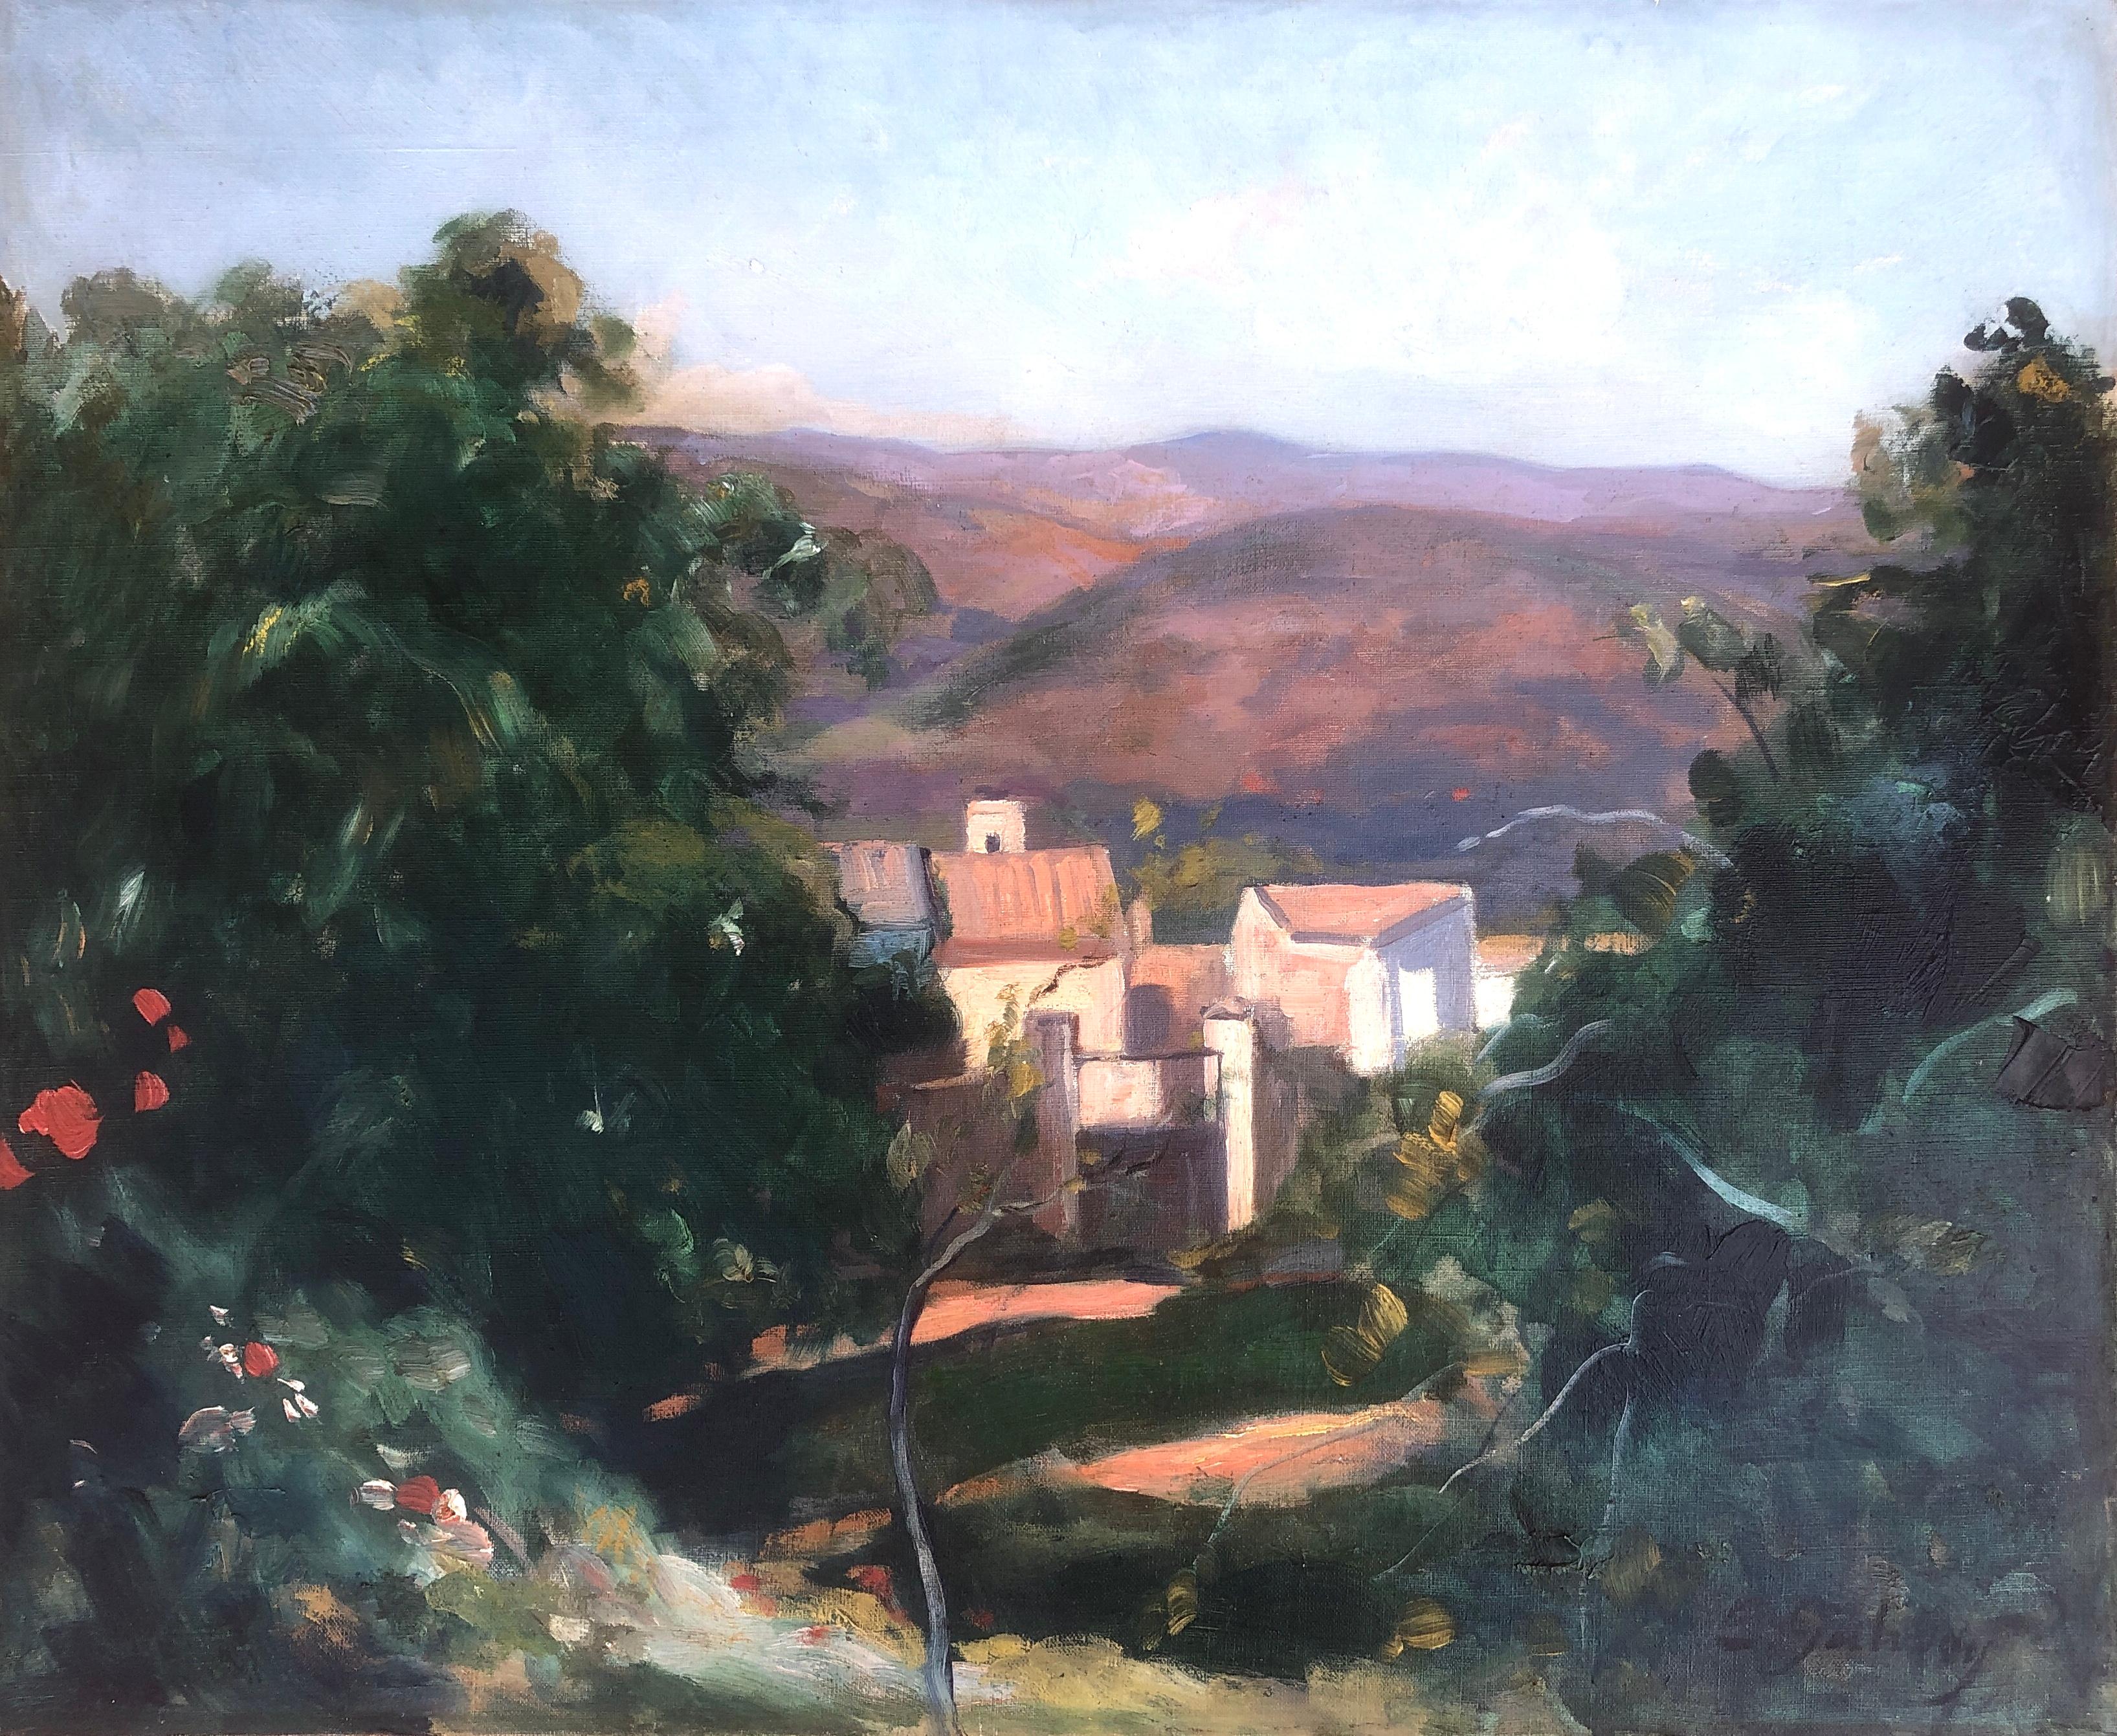 Landscape Painting Enrique Galwey - Paysage espagnol peinture à l'huile sur toile